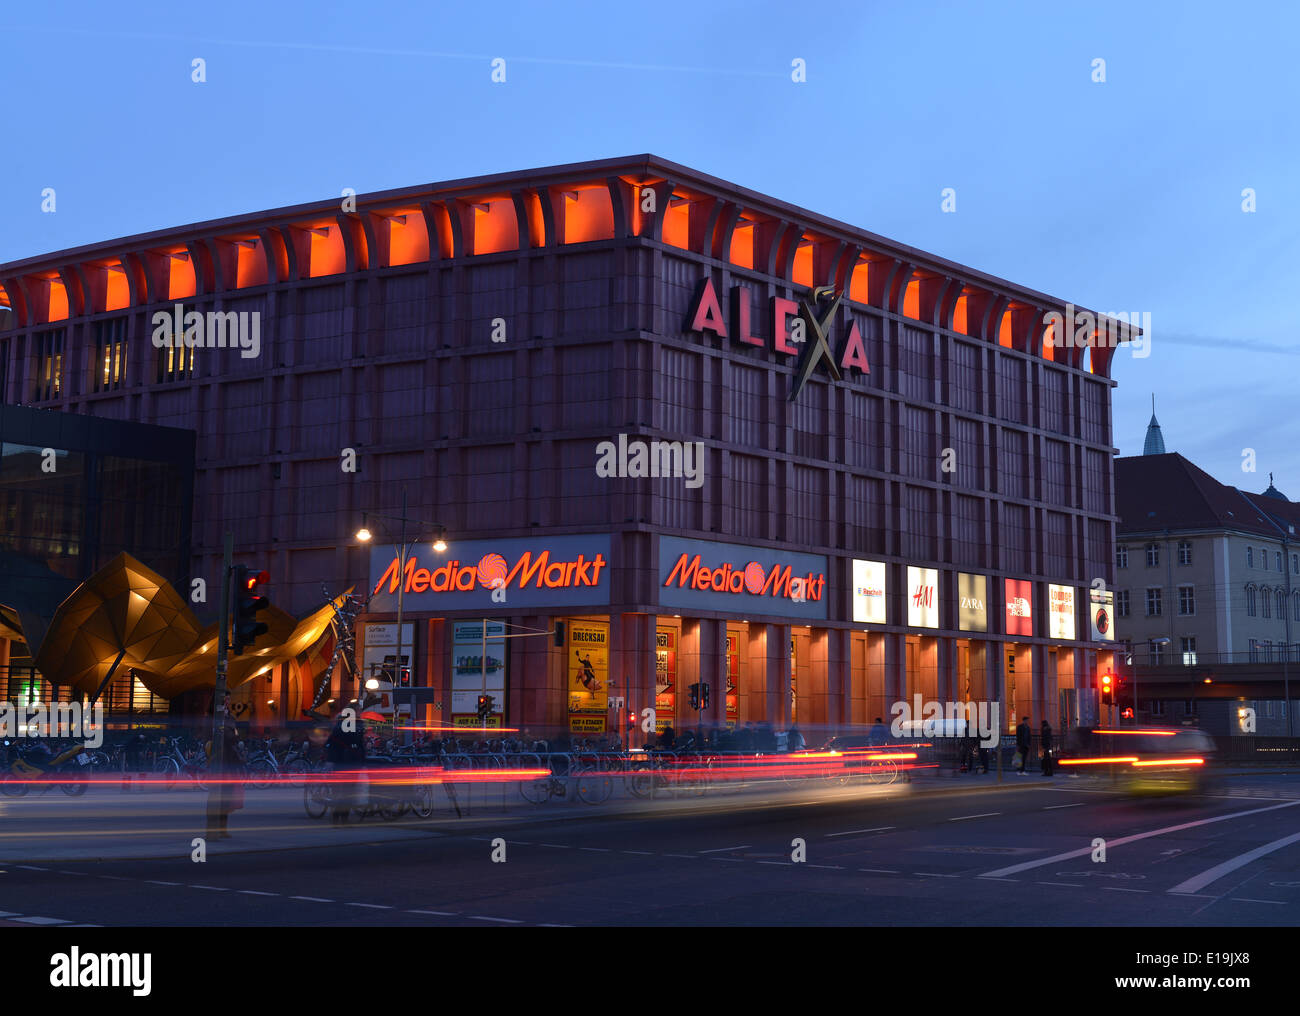 Alexa Kaufhaus, Grunerstrasse, Alexanderplatz, Mitte, Berlin, Deutschland  Stock Photo - Alamy